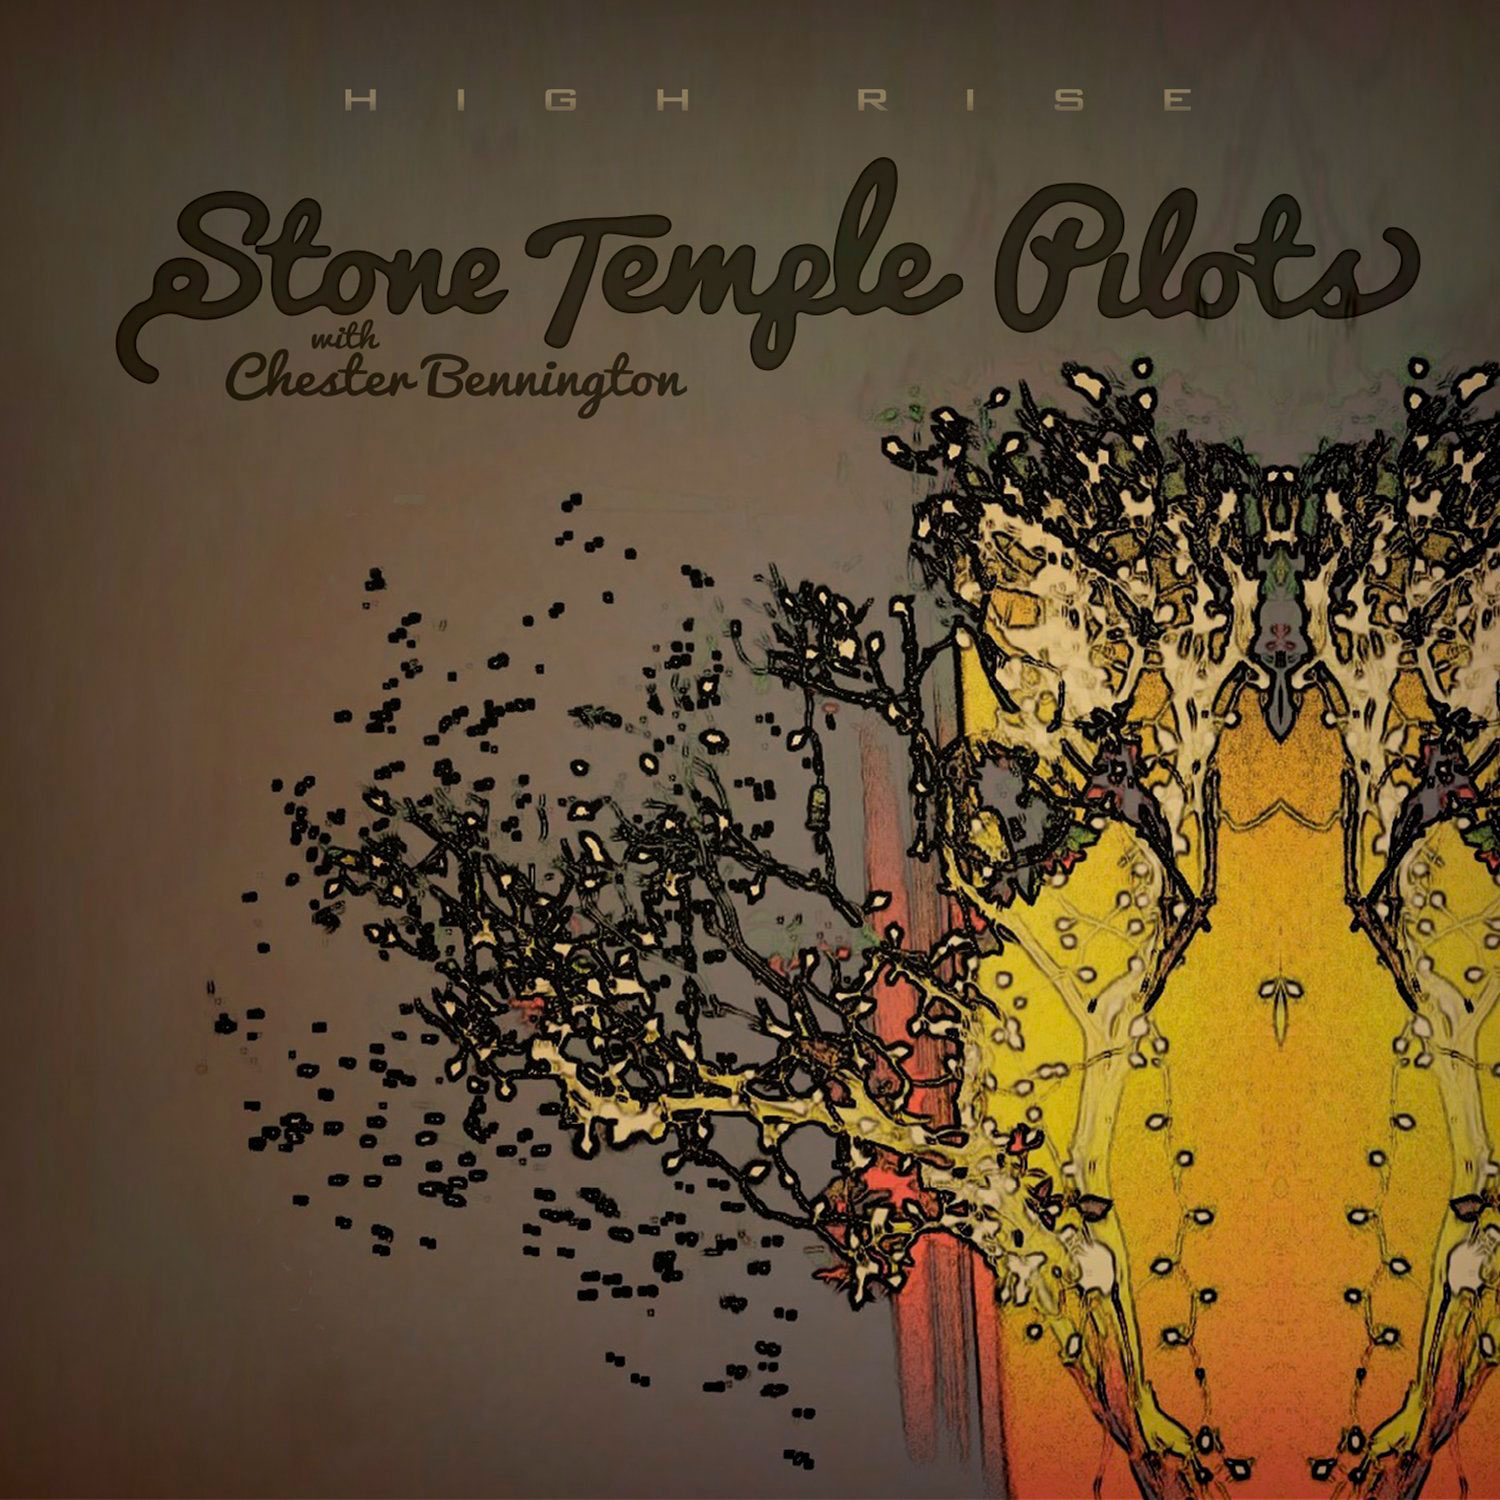 Stone Temple Pilots: High rise - with Chester Bennington, la portada del  disco